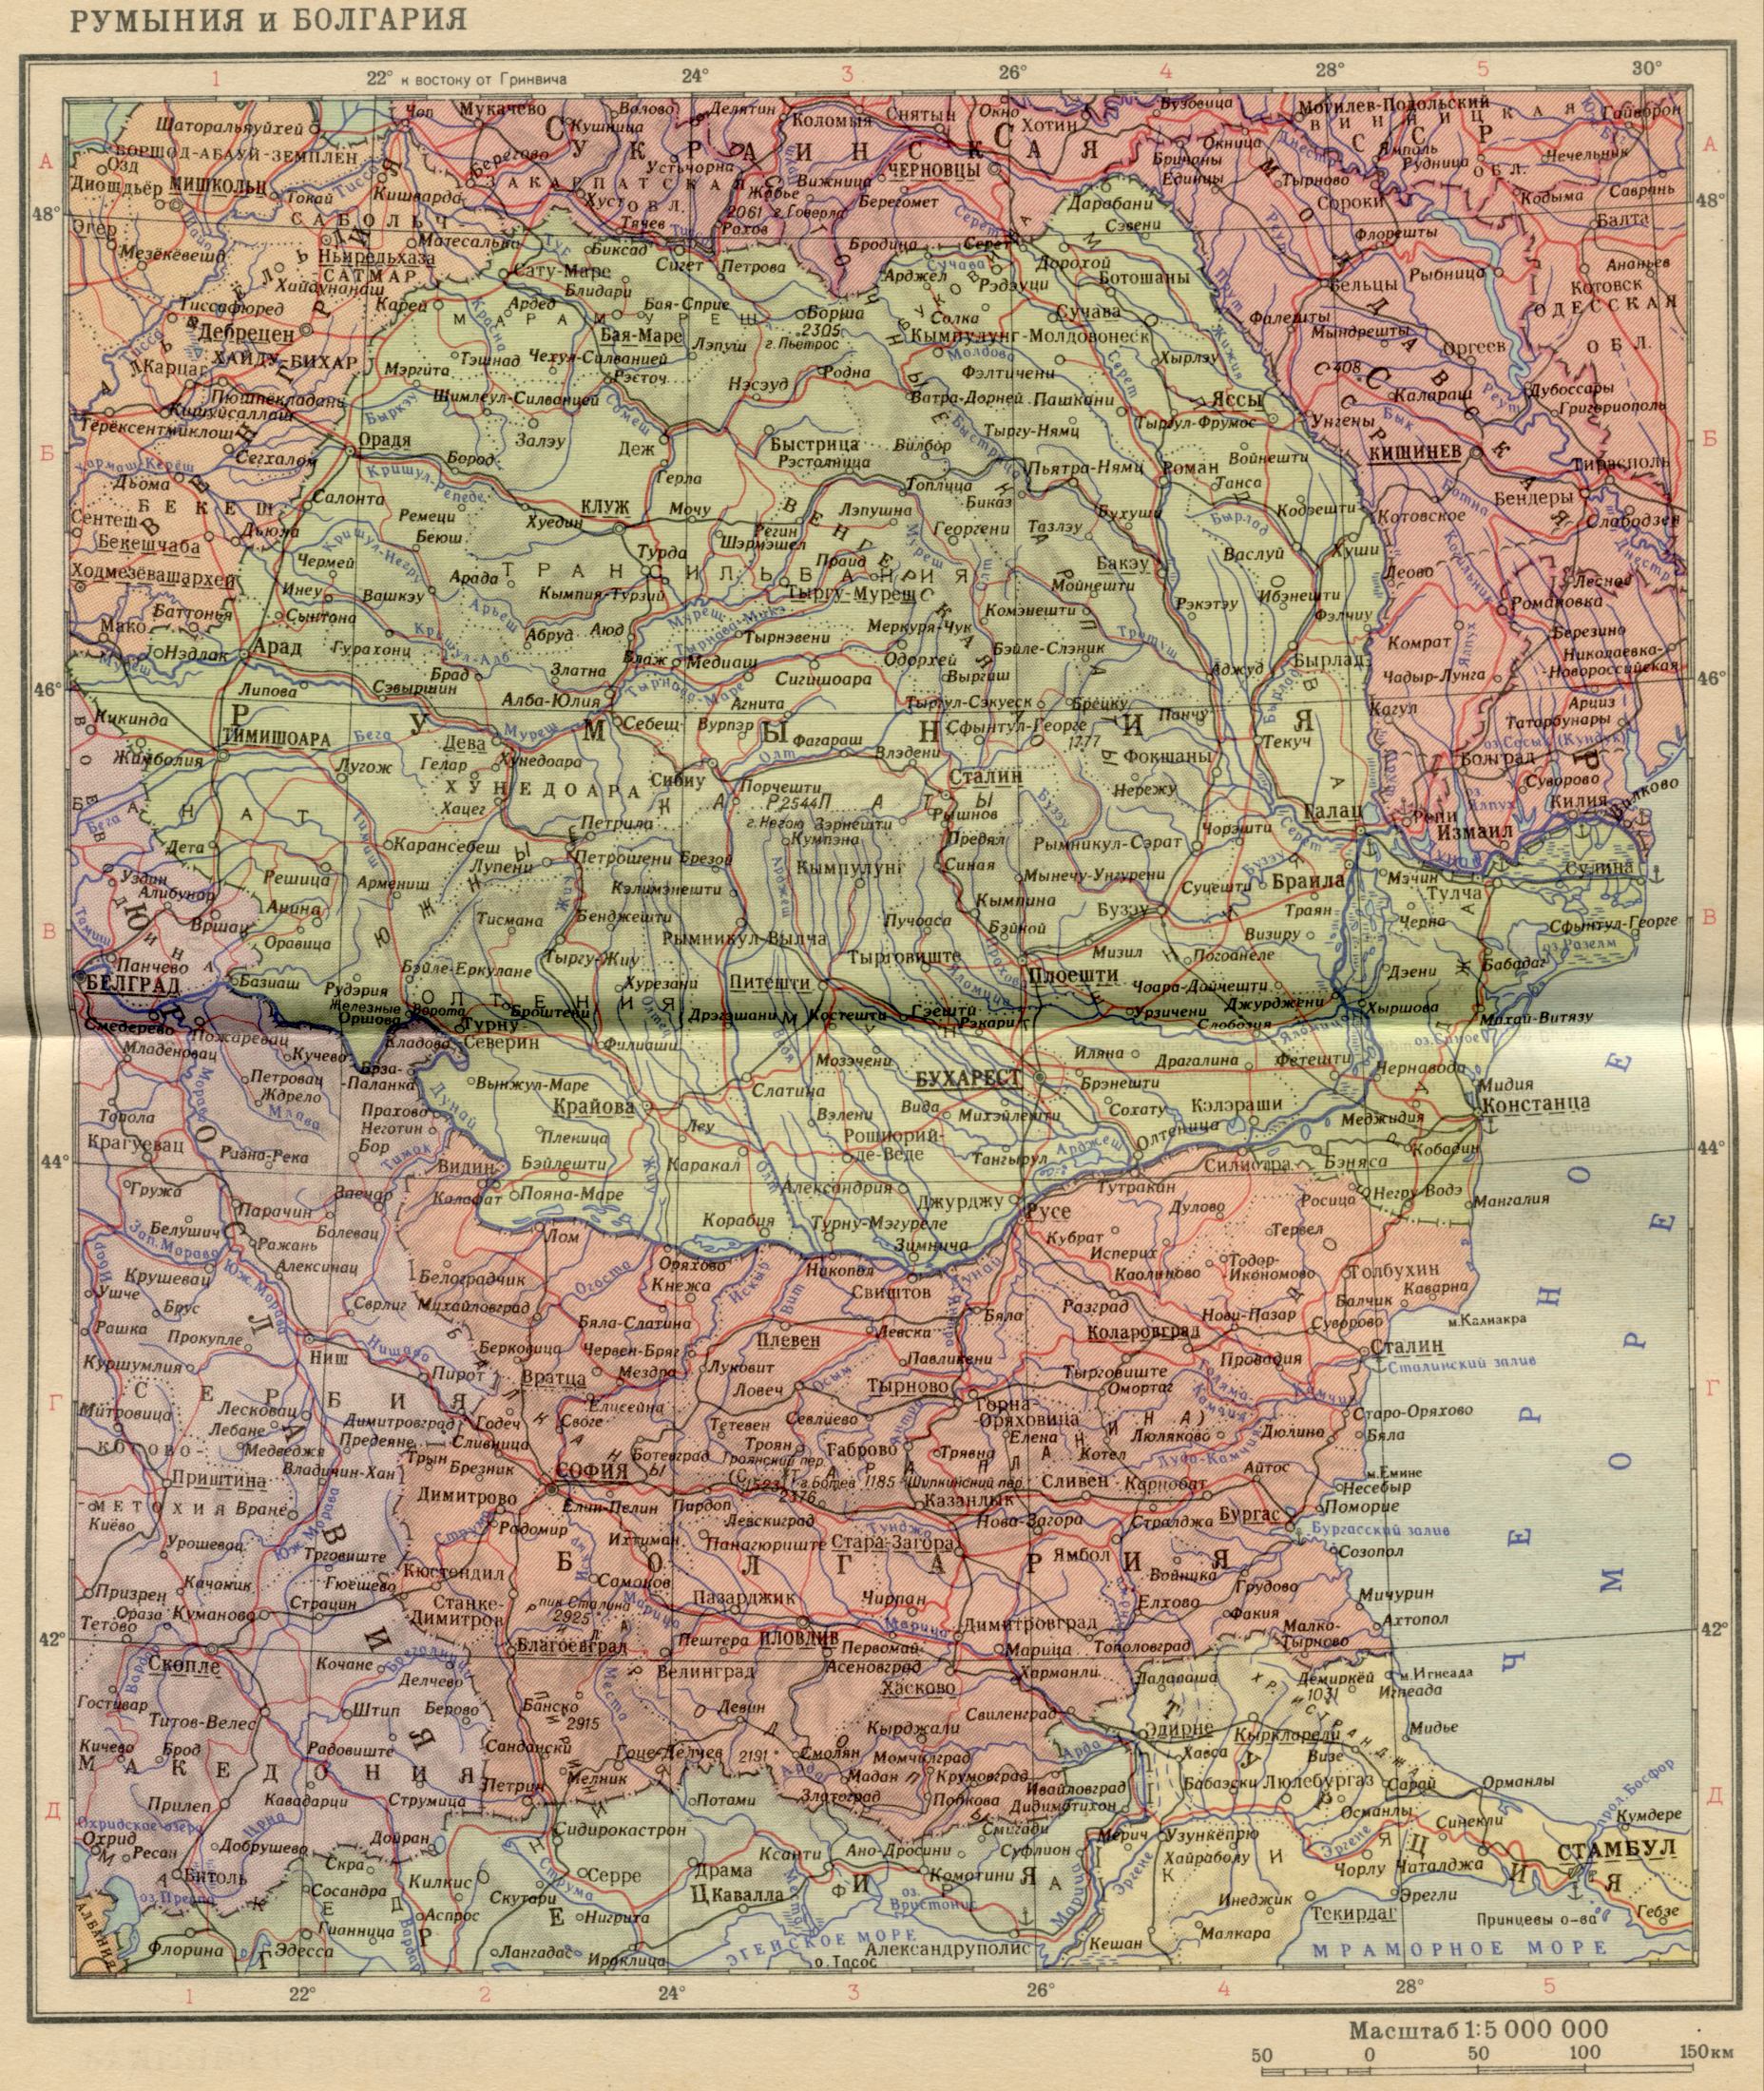 1956 рік. Політична карта світу - Румунія і Болгарія в 1956 році. Завантажити безкоштовно докладну карту Дунай